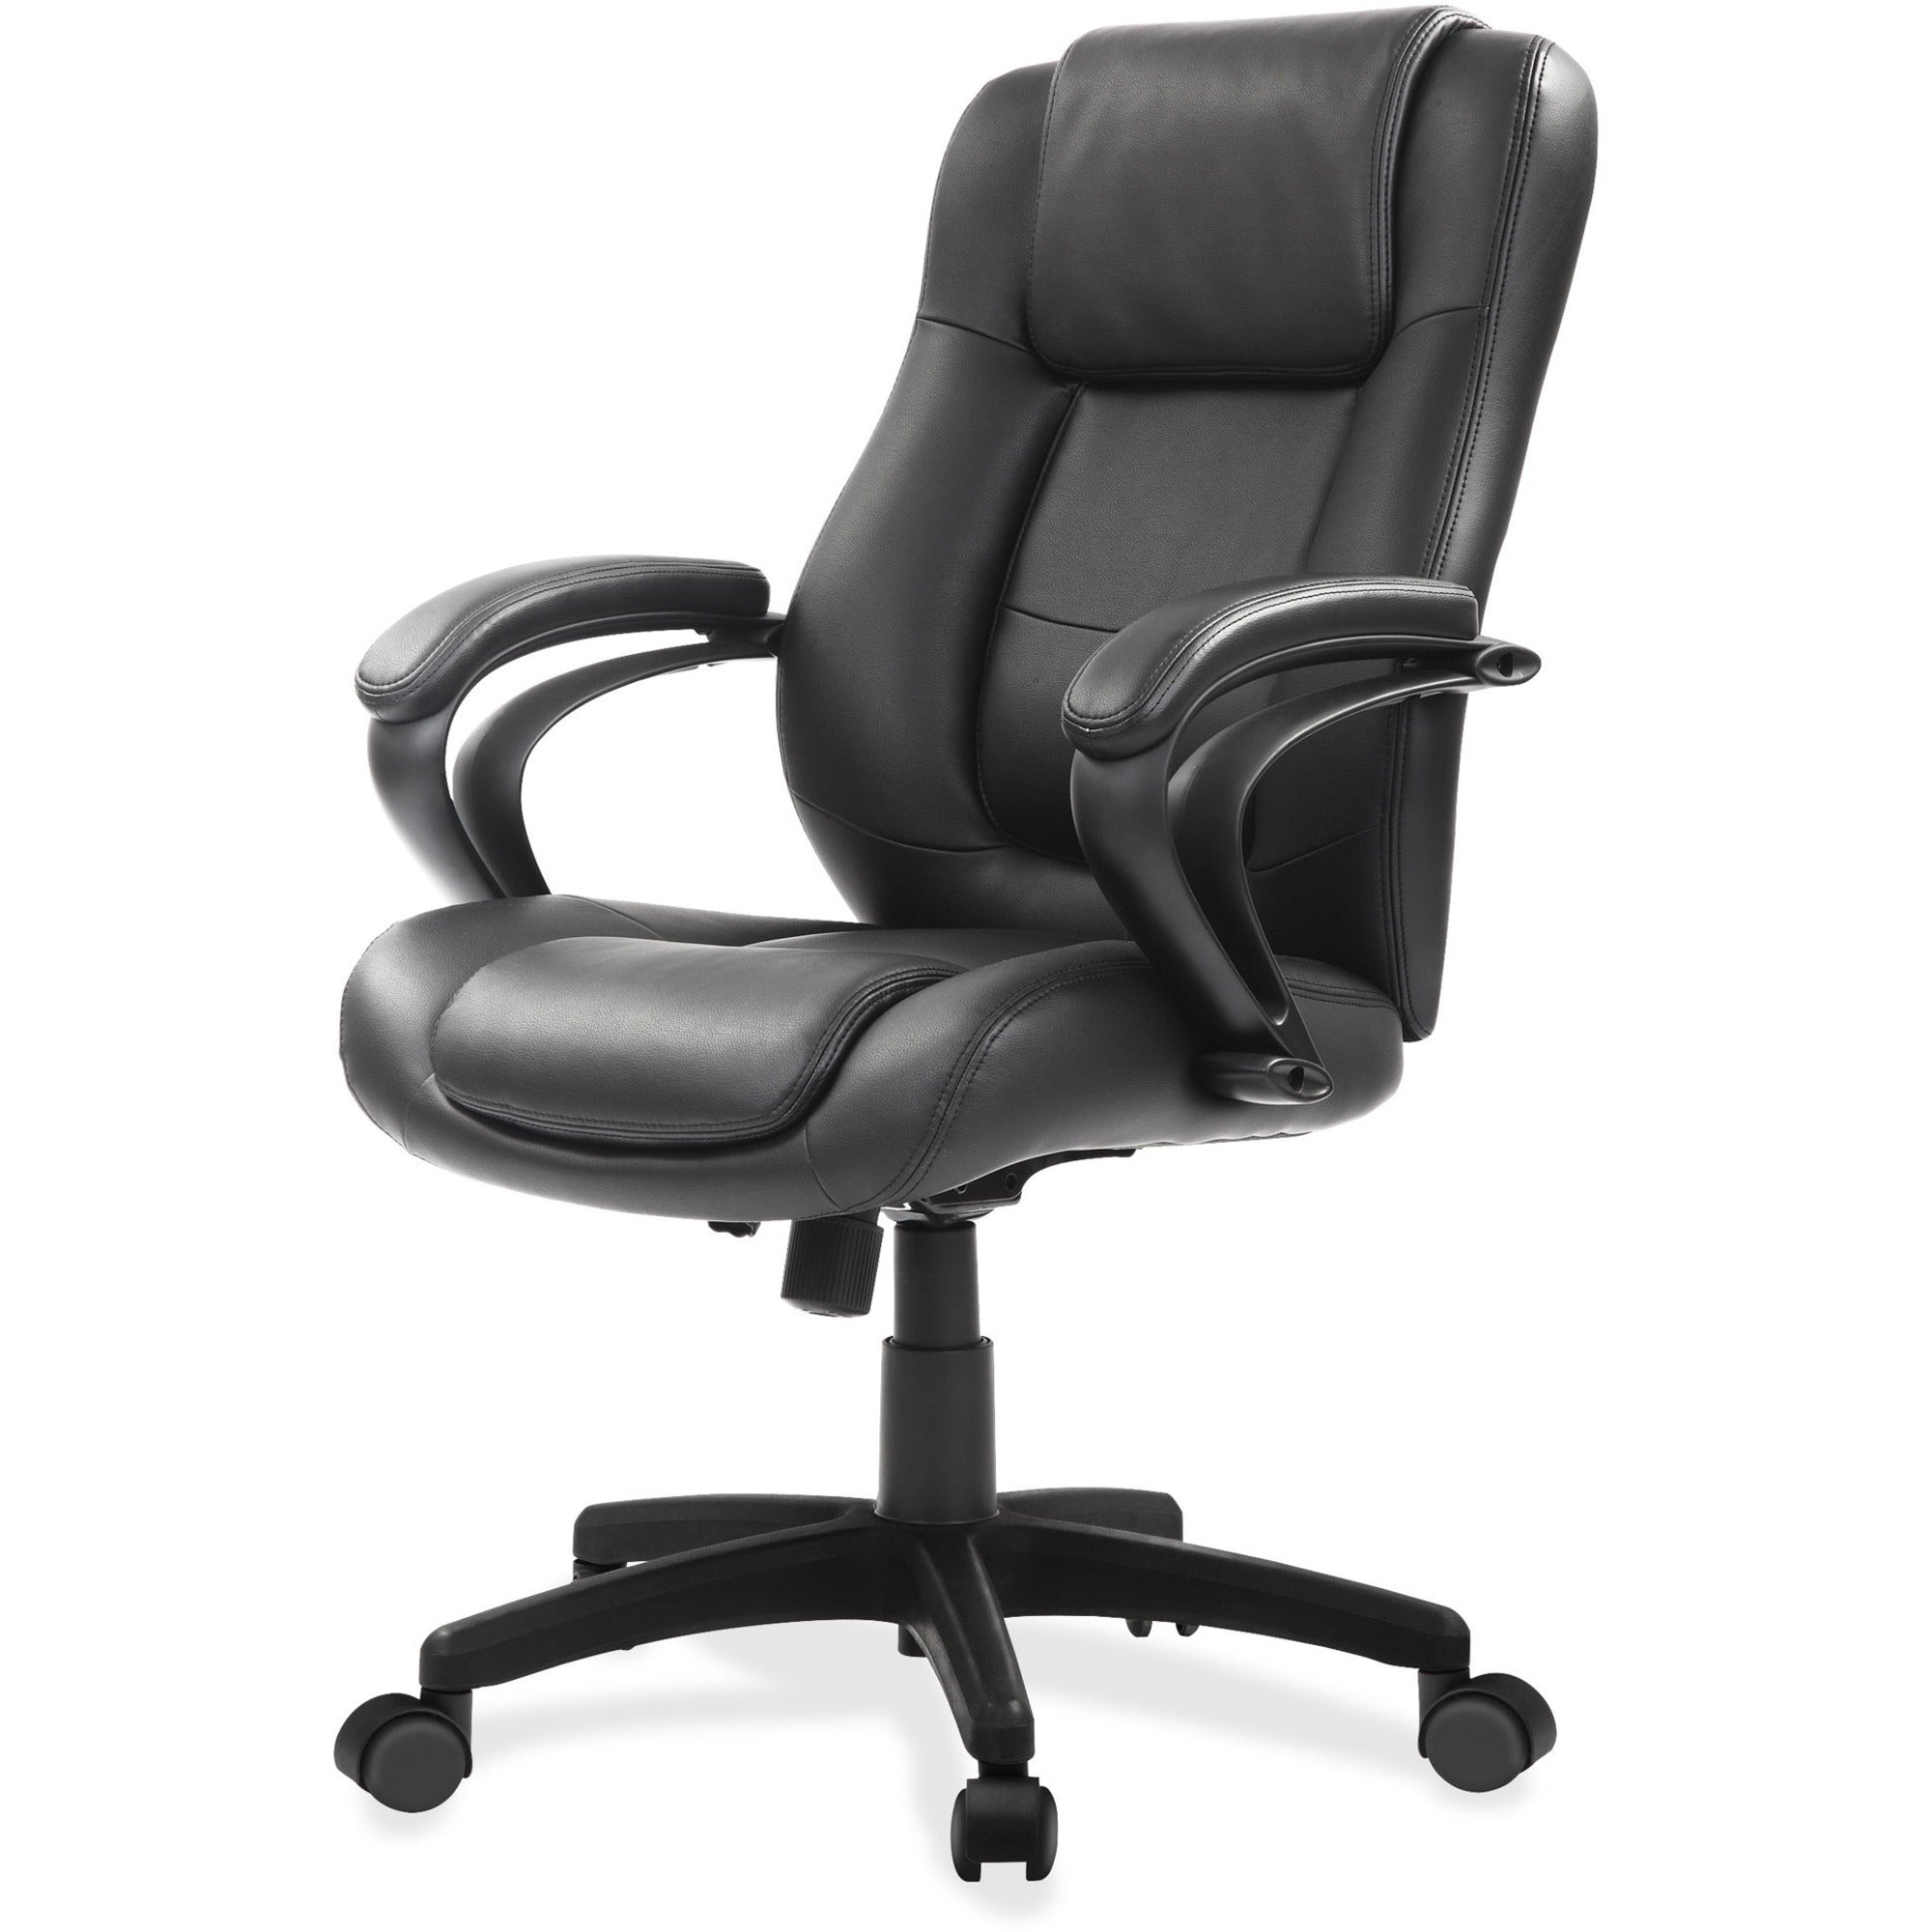 eurotech-pembroke-mid-back-executive-chair-black-bonded-leather-seat-black-bonded-leather-back-low-back-5-star-base-1-each_eutle522 - 1